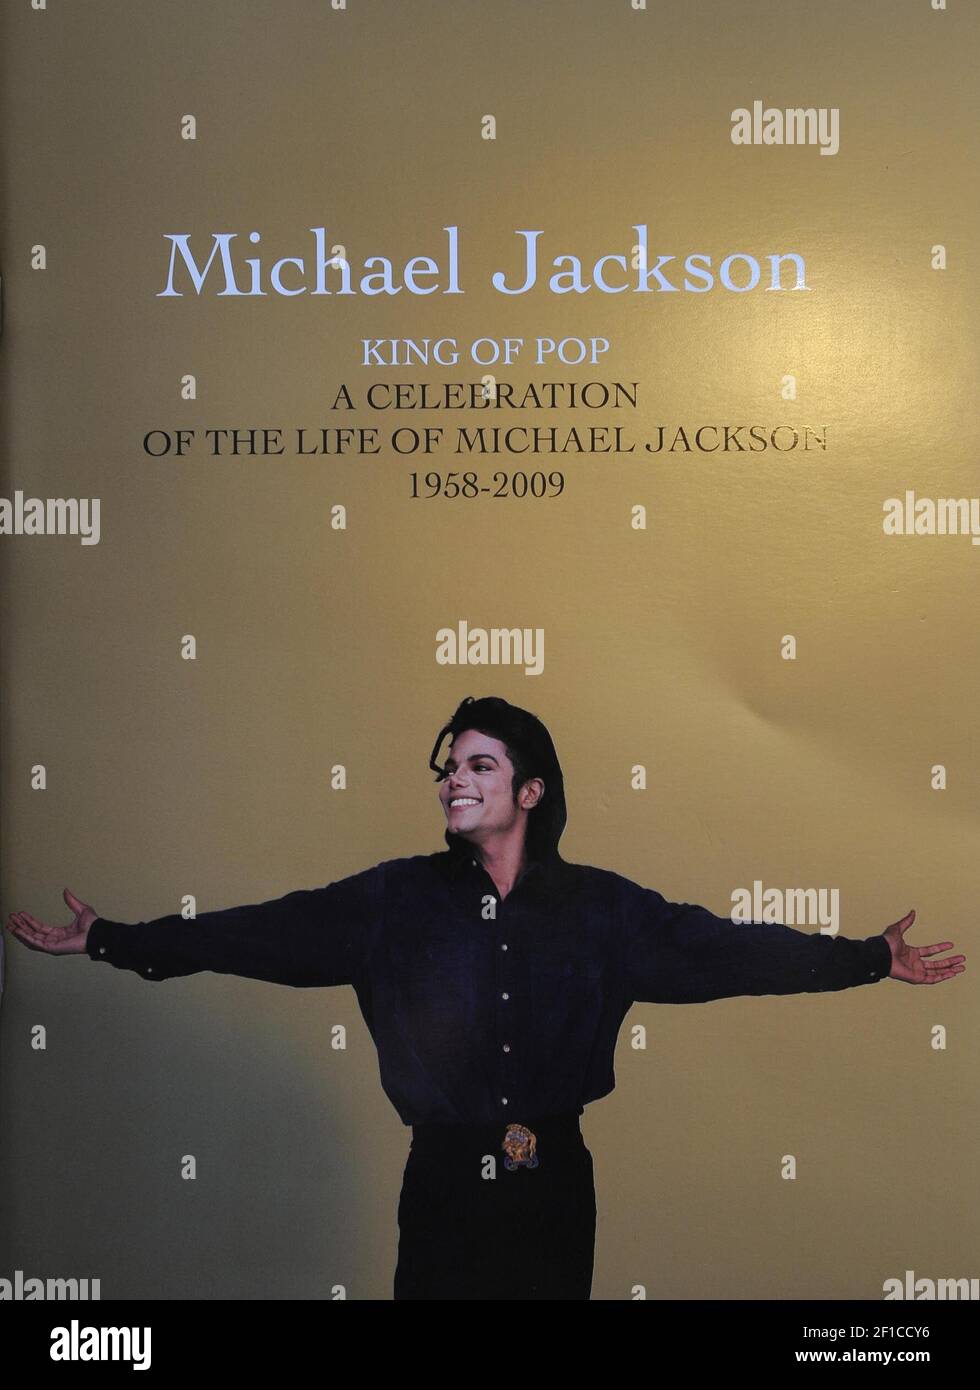 Questa è una cover del programma di servizio memoriale della star pop Michael Jackson allo Staples Center di Los Angeles, California, USA, 7 luglio 2009. Jackson morì il 25 giugno 2009 all'età di 50 anni. (Foto di Andrew Gombert/EPA/MCT/Sipa USA) Foto Stock